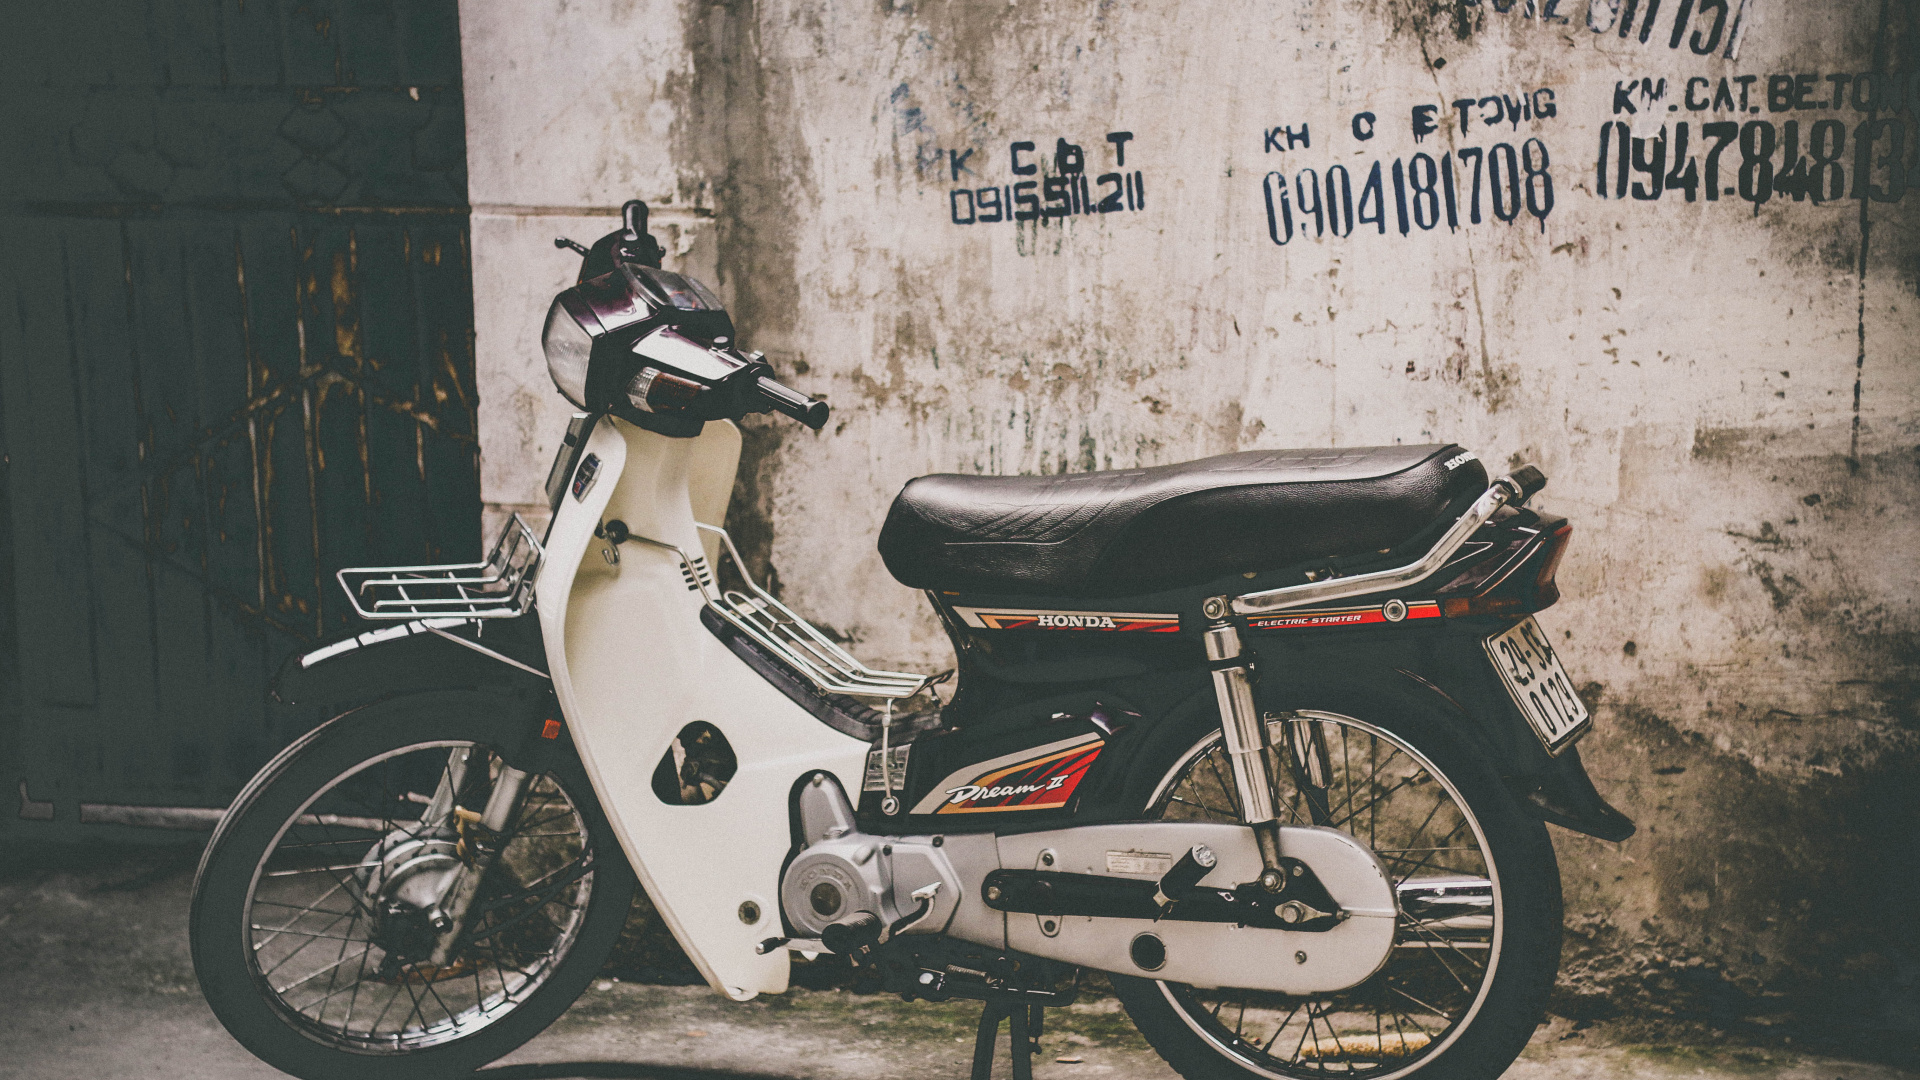 自行车, 轻便摩托车, 发言, 汽车轮胎, 胡志明市 壁纸 1920x1080 允许